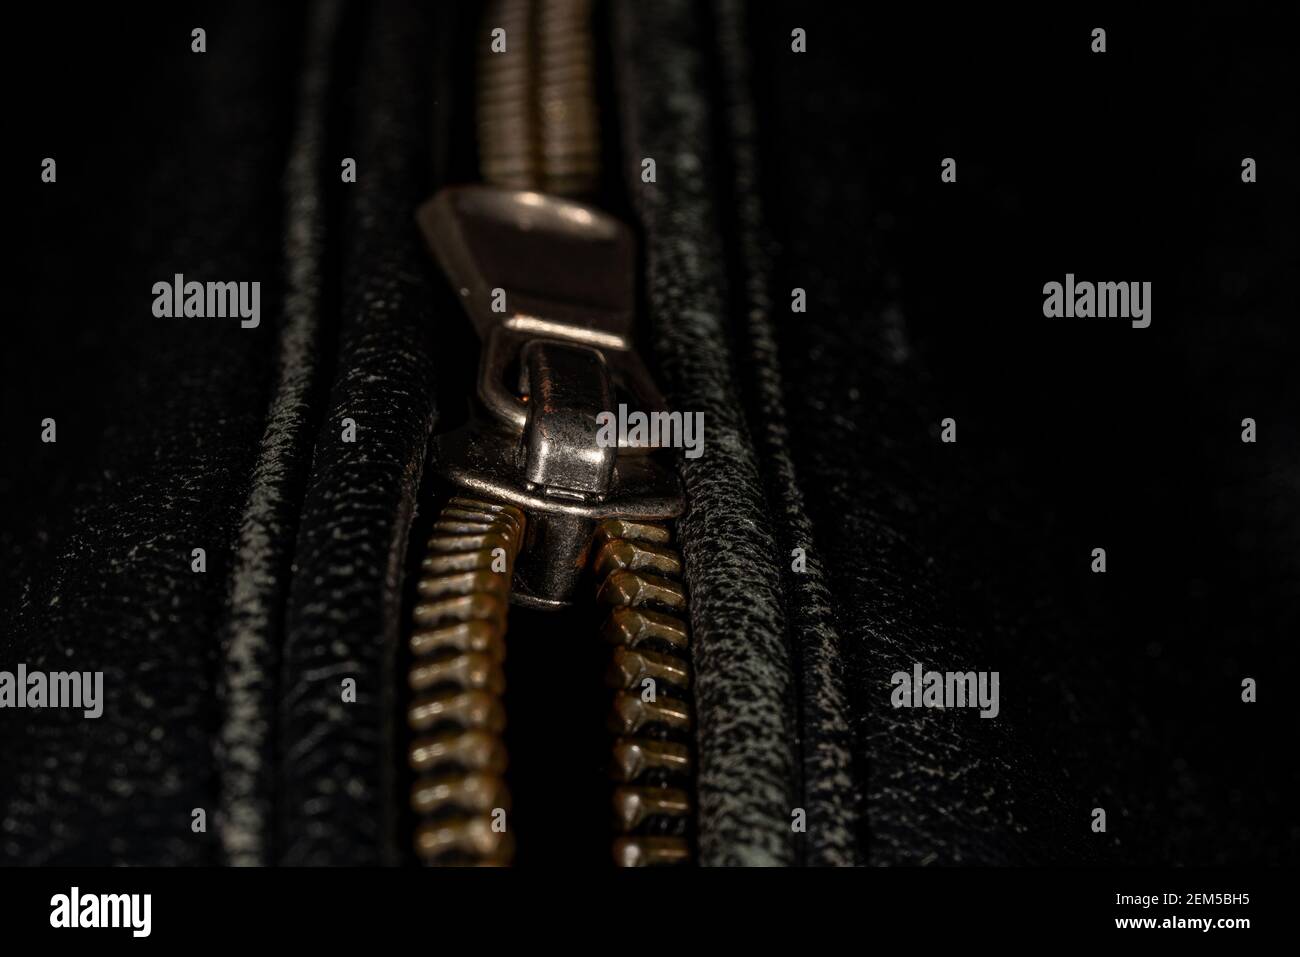 Detail der Verriegelung Reißverschluss auf schwarzem Leder Jacke. Nahaufnahme der Makro-Aufnahme mit lokalem Fokus. Vertikale Makrofotografie. Stockfoto